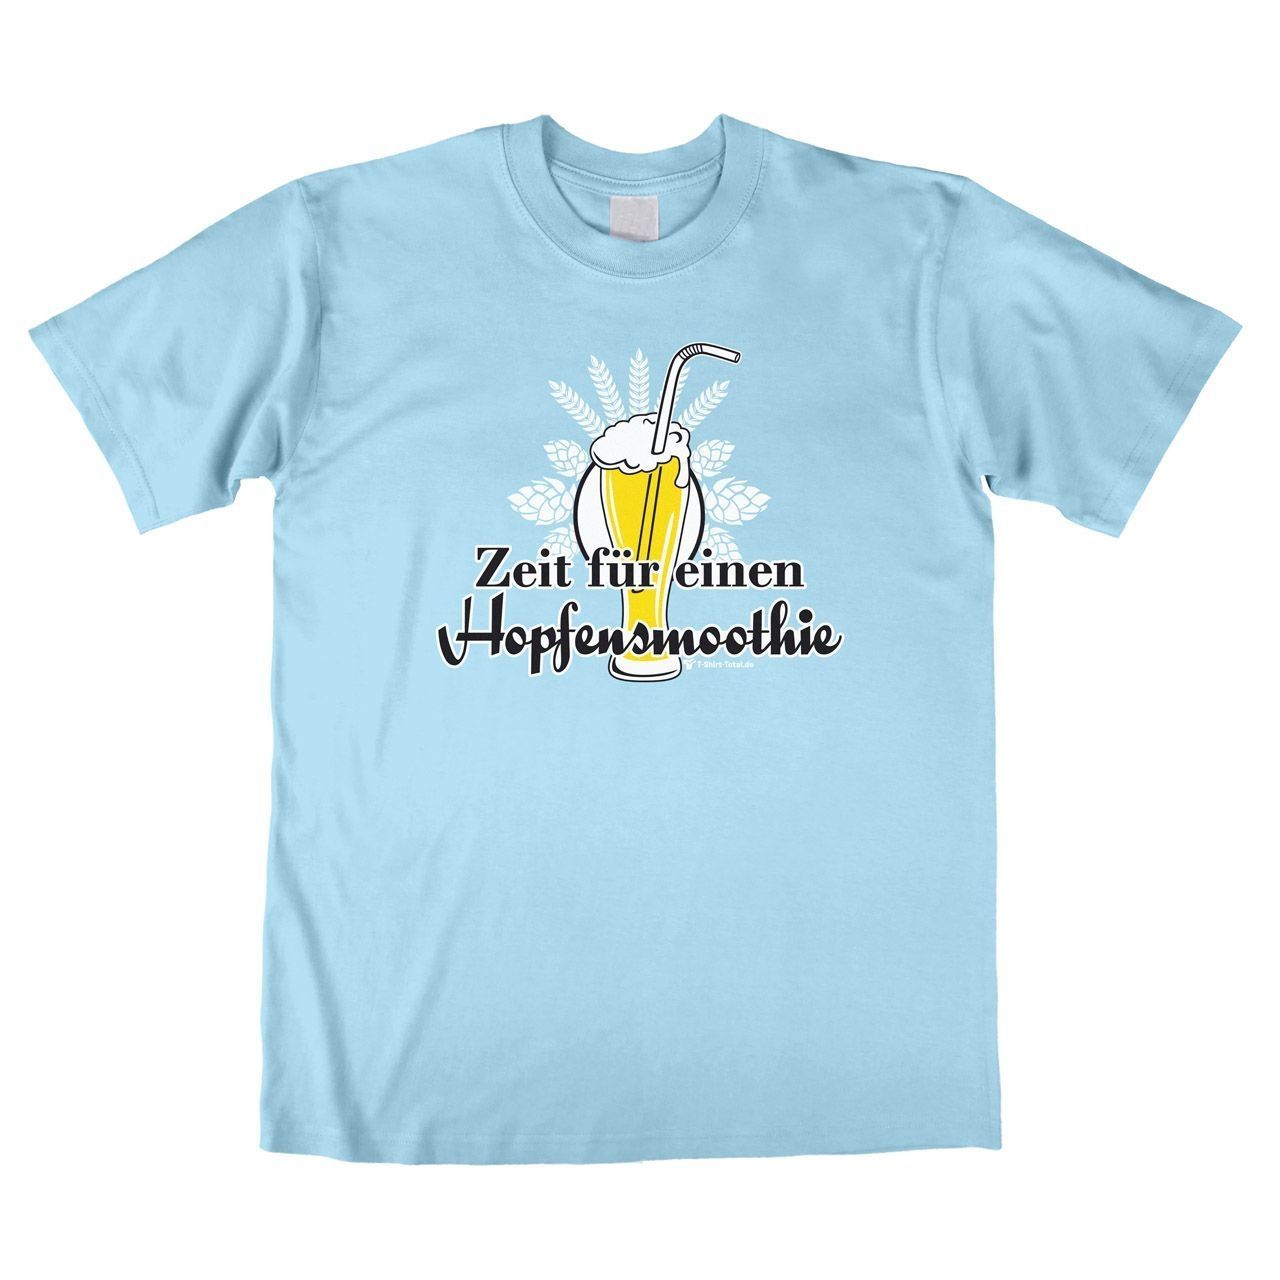 Hopfensmoothie Unisex T-Shirt hellblau Large